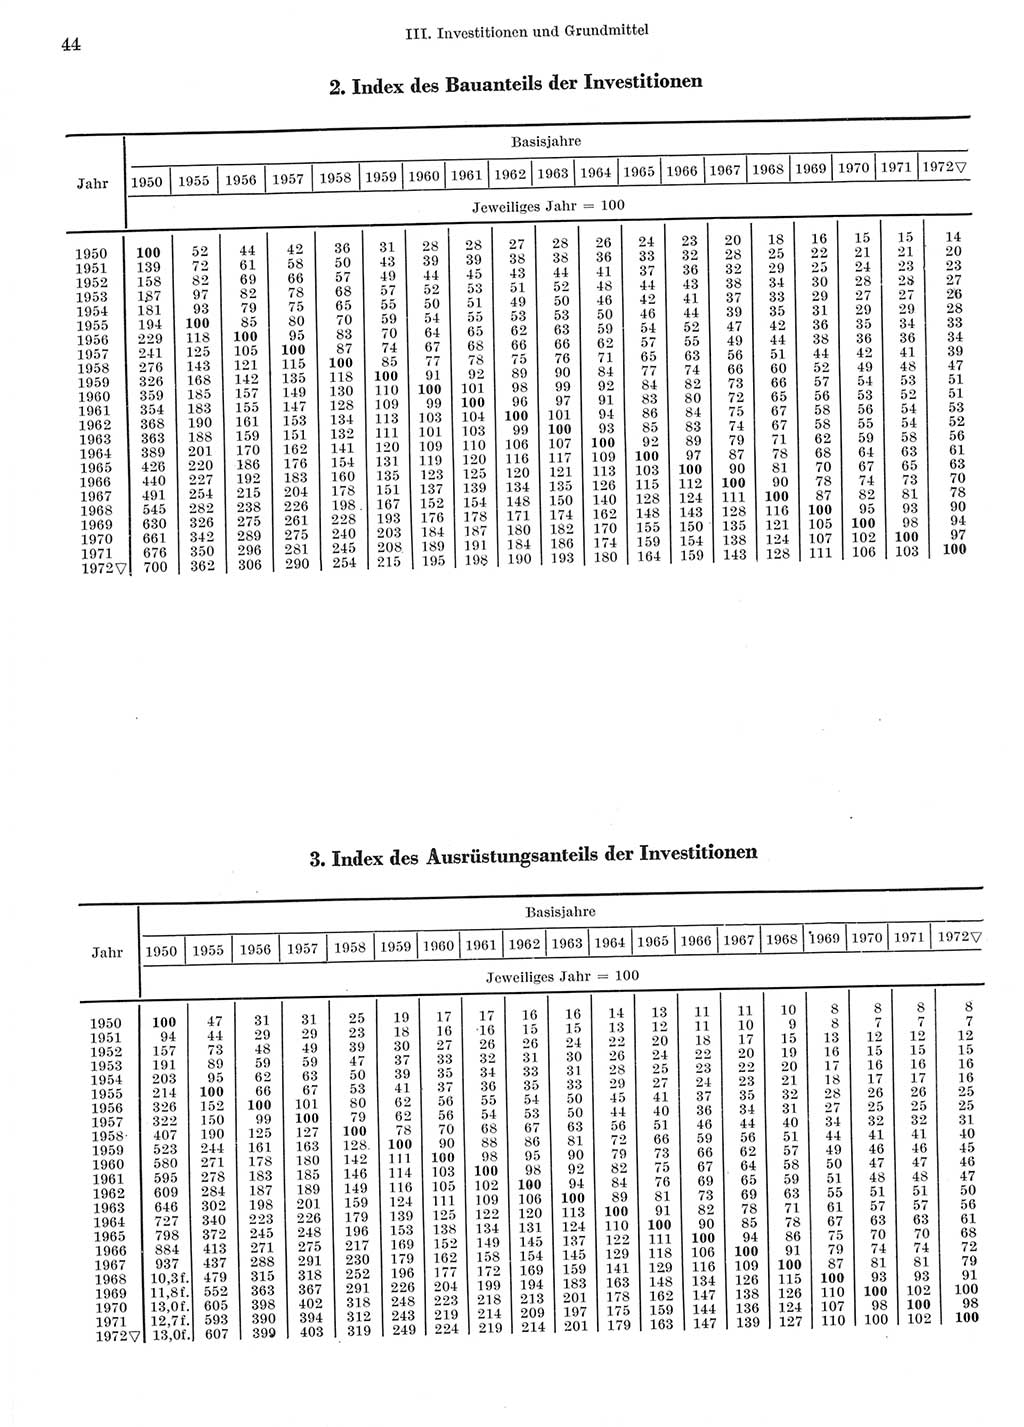 Statistisches Jahrbuch der Deutschen Demokratischen Republik (DDR) 1973, Seite 44 (Stat. Jb. DDR 1973, S. 44)